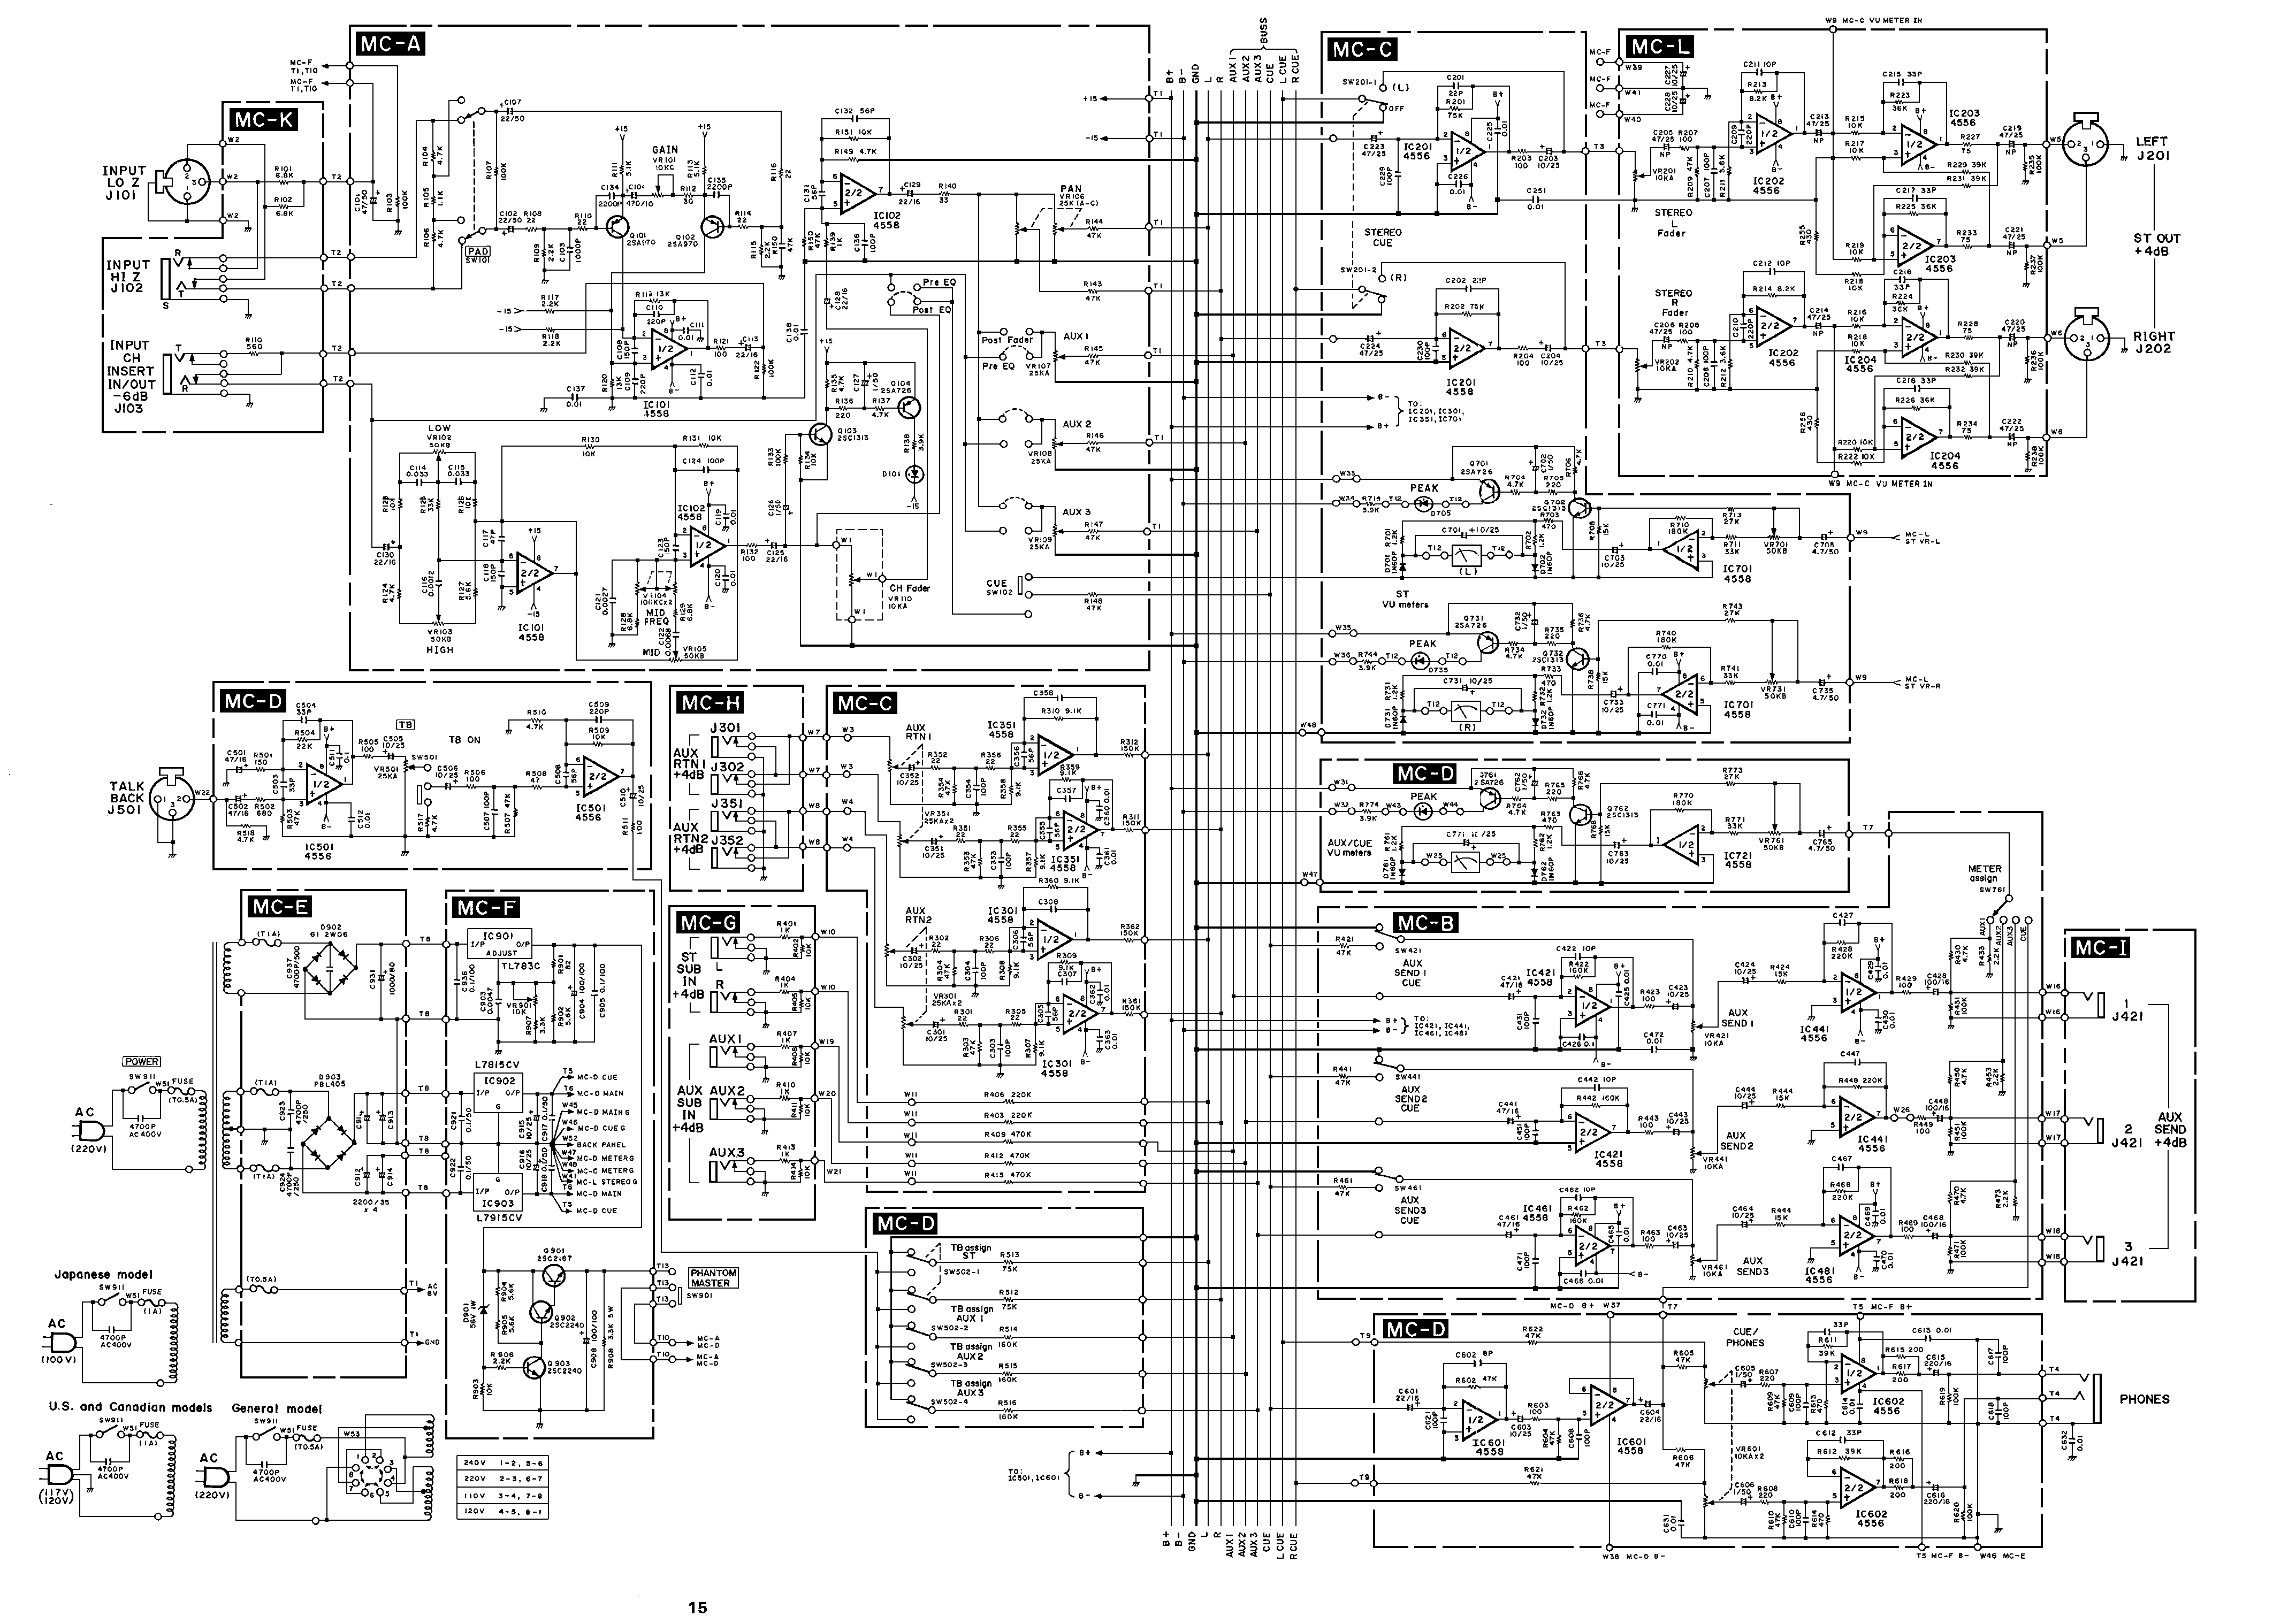 Yamaha MC8, MC12, MC16 mixer